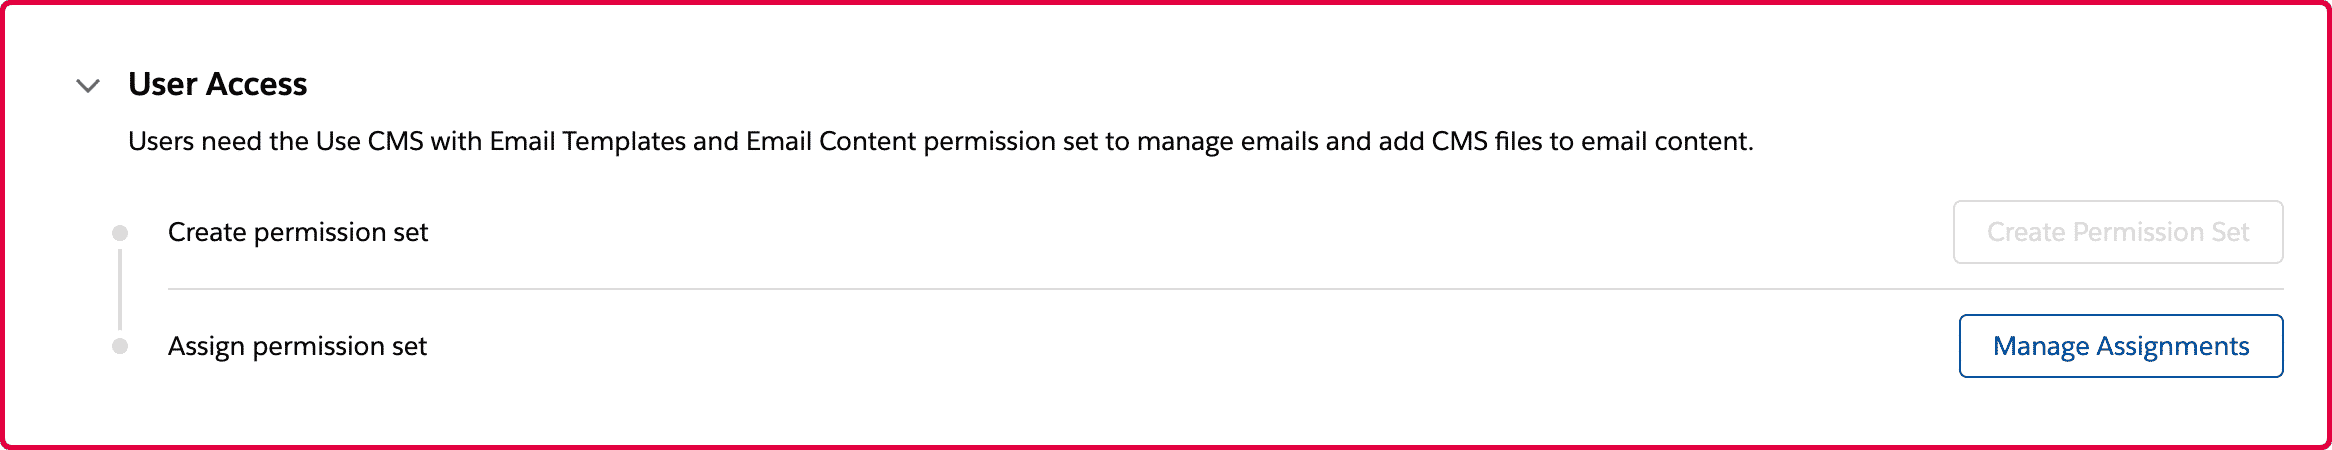 Pardot Email Builder - Permission Set